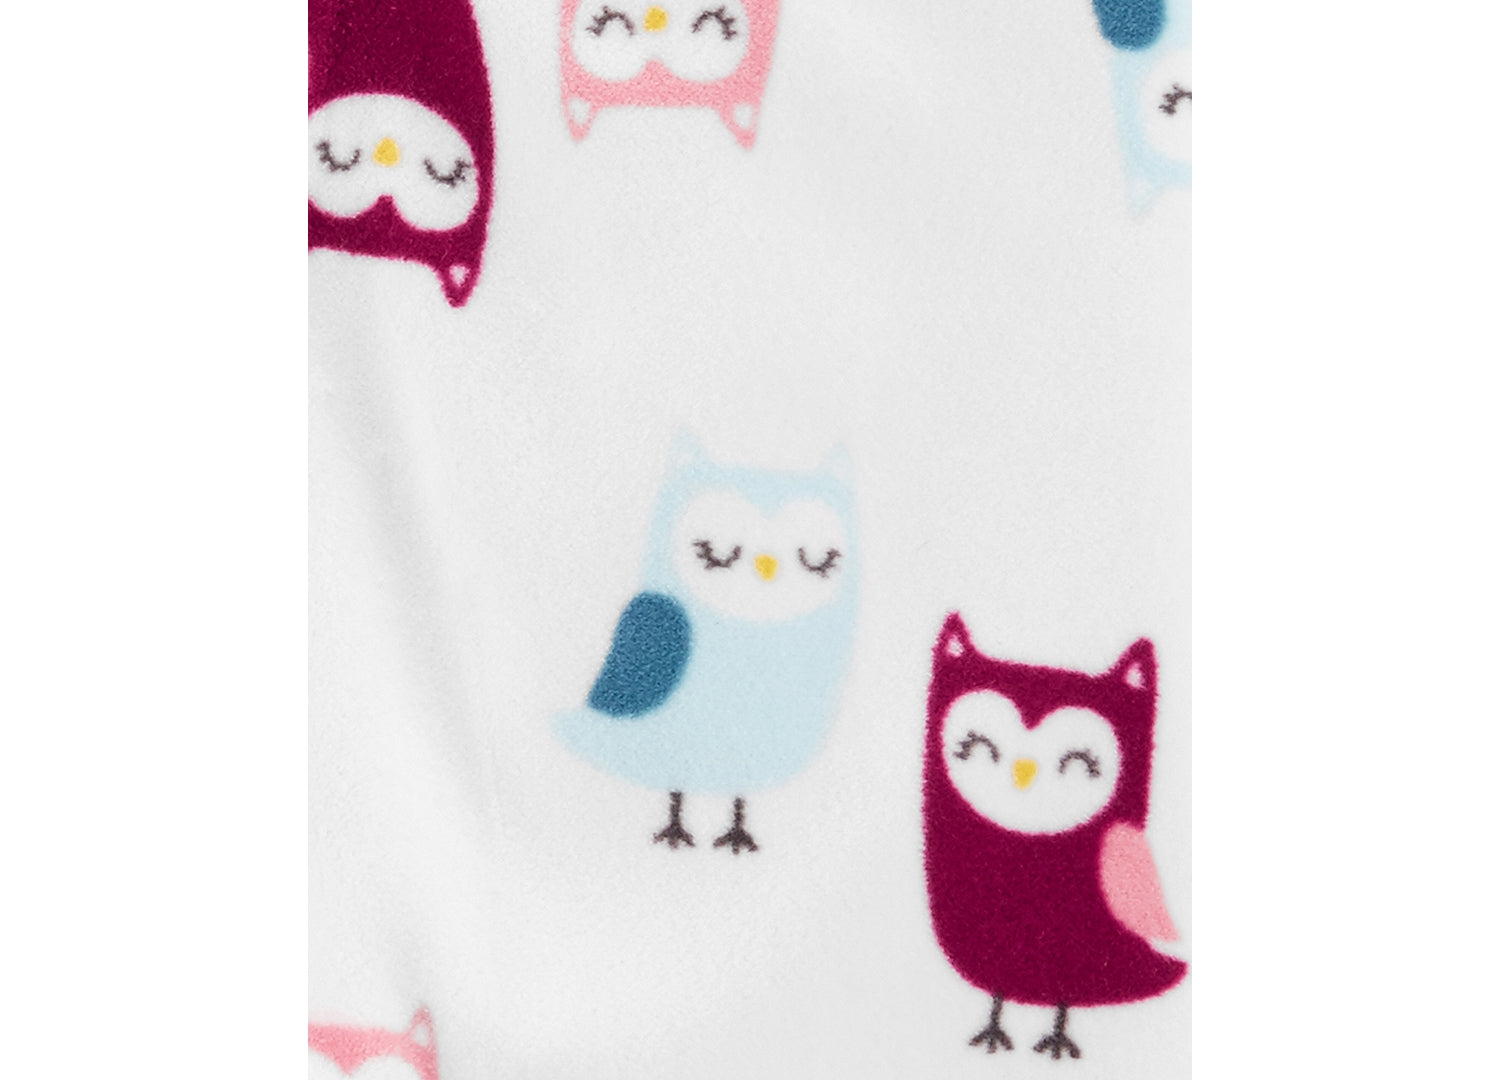 allbrand365 Designer Infant Girls Owls Fleece Footed Pajamas